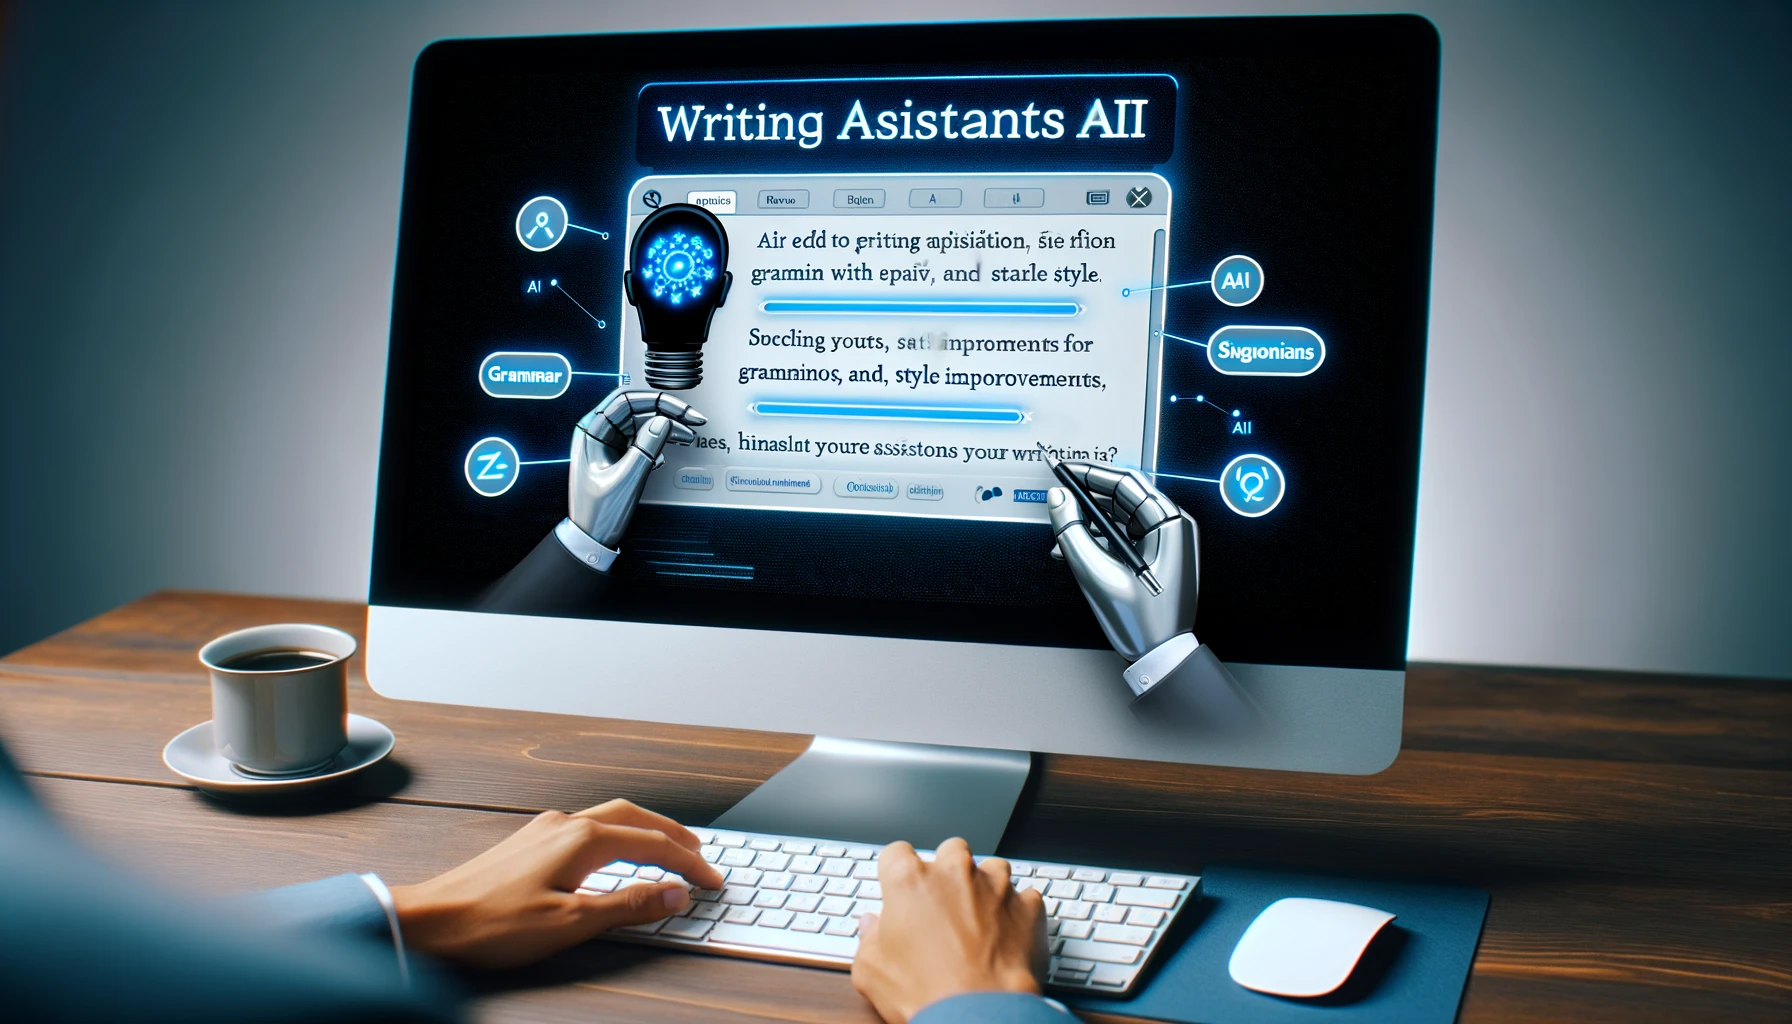 Writing Assistants AIs